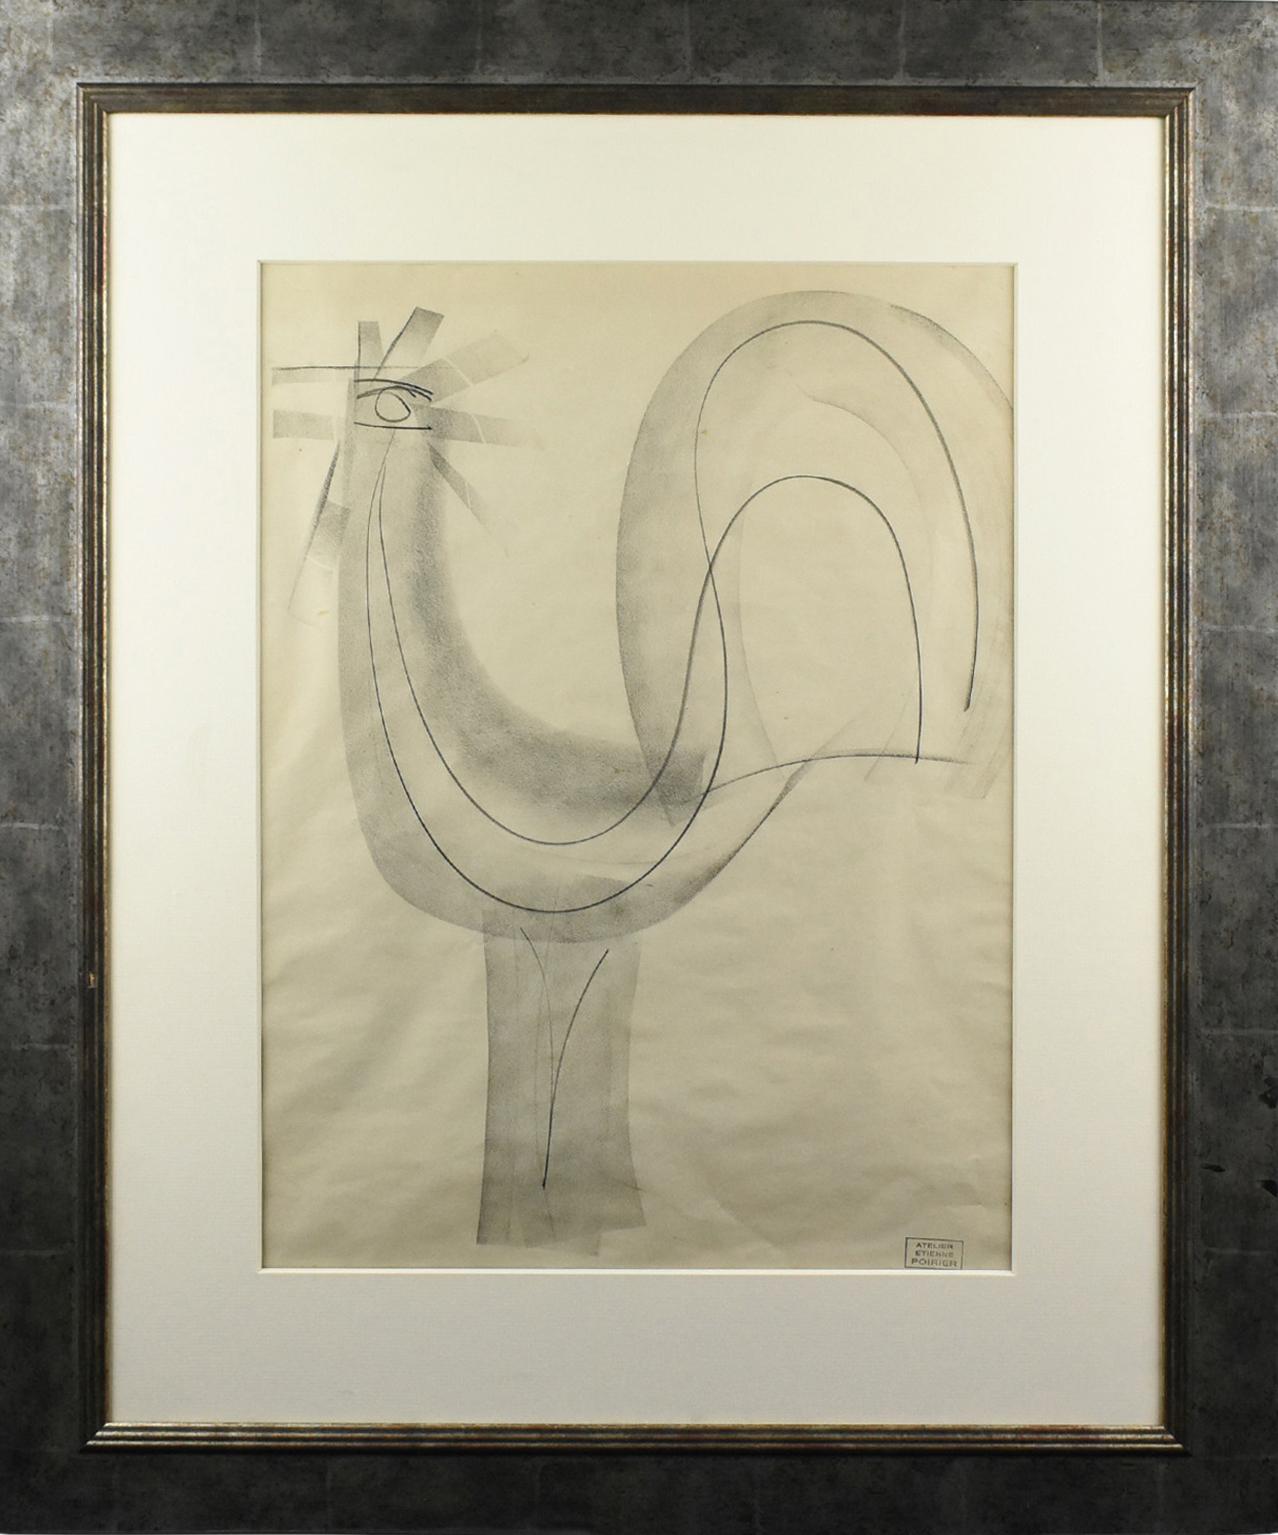 Der französische Künstler Etienne Poirier (1919-2002) entwarf diese beeindruckende modernistische Zeichnung. Dieses Werk ist eine Komposition aus Kohle auf Papier, die einen stolzen Hahn darstellt. Diese Komposition ist minimalistisch, da nur wenige